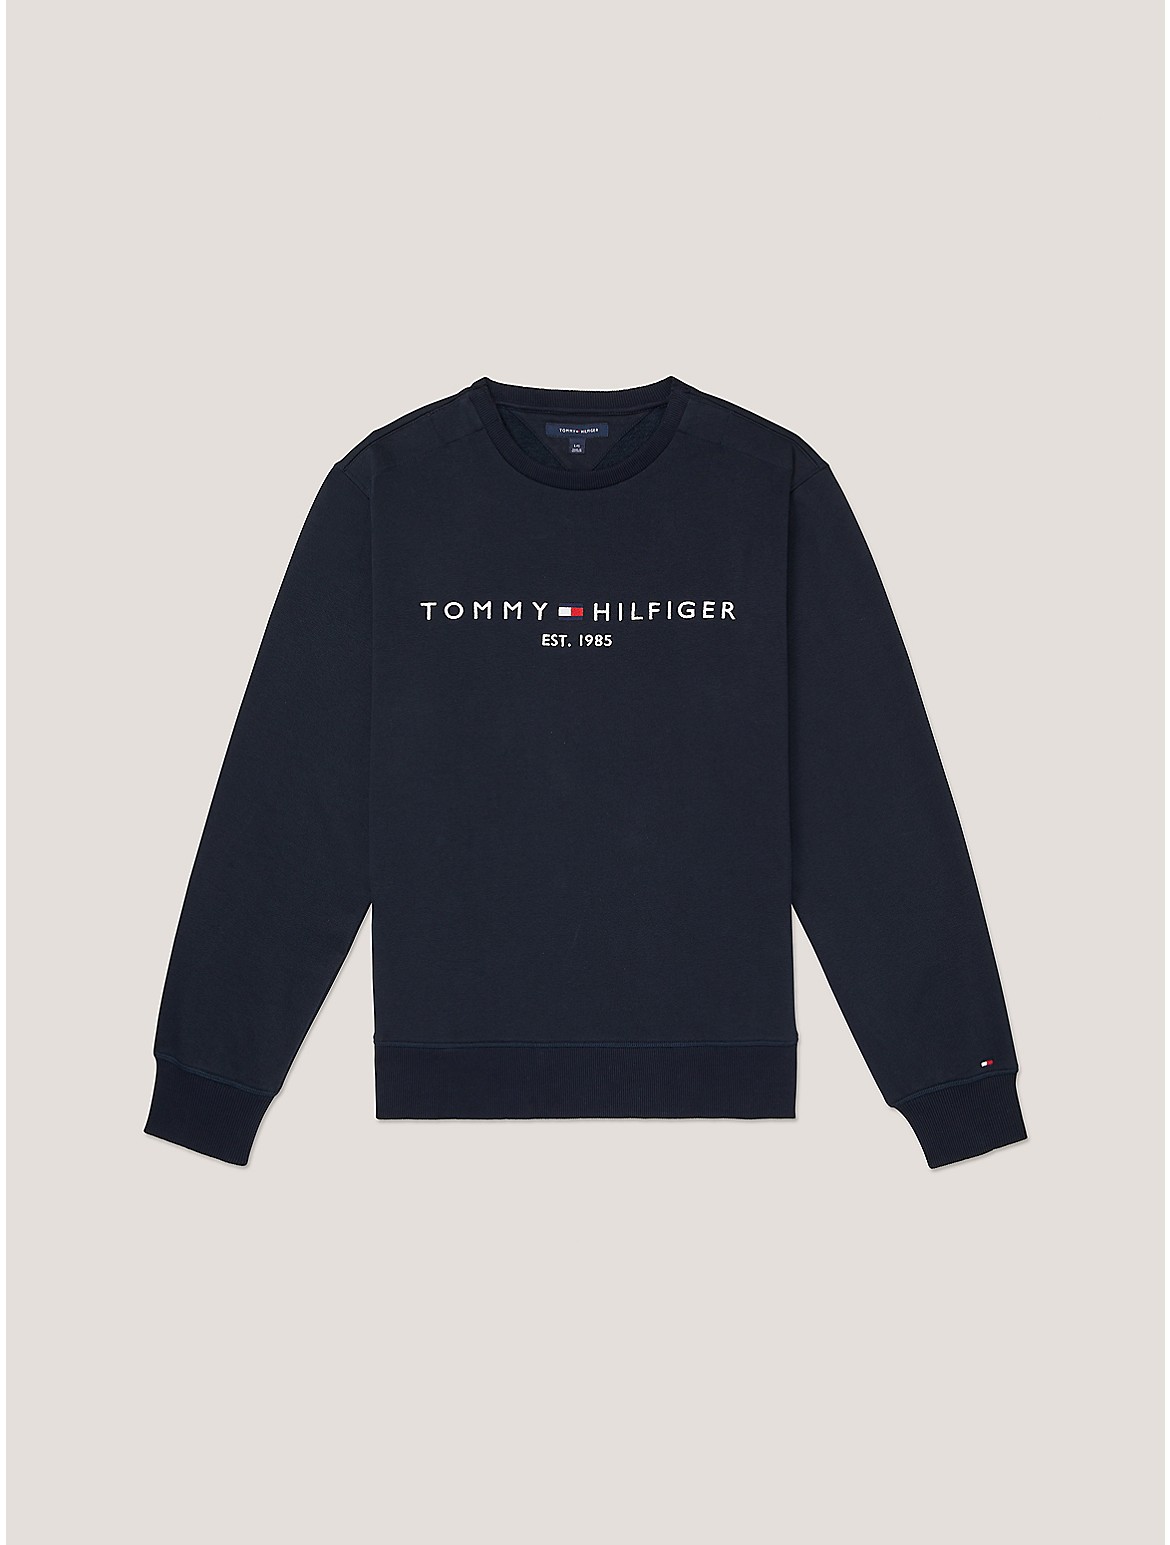 Tommy Hilfiger Men's Hilfiger Stripe Sweatshirt